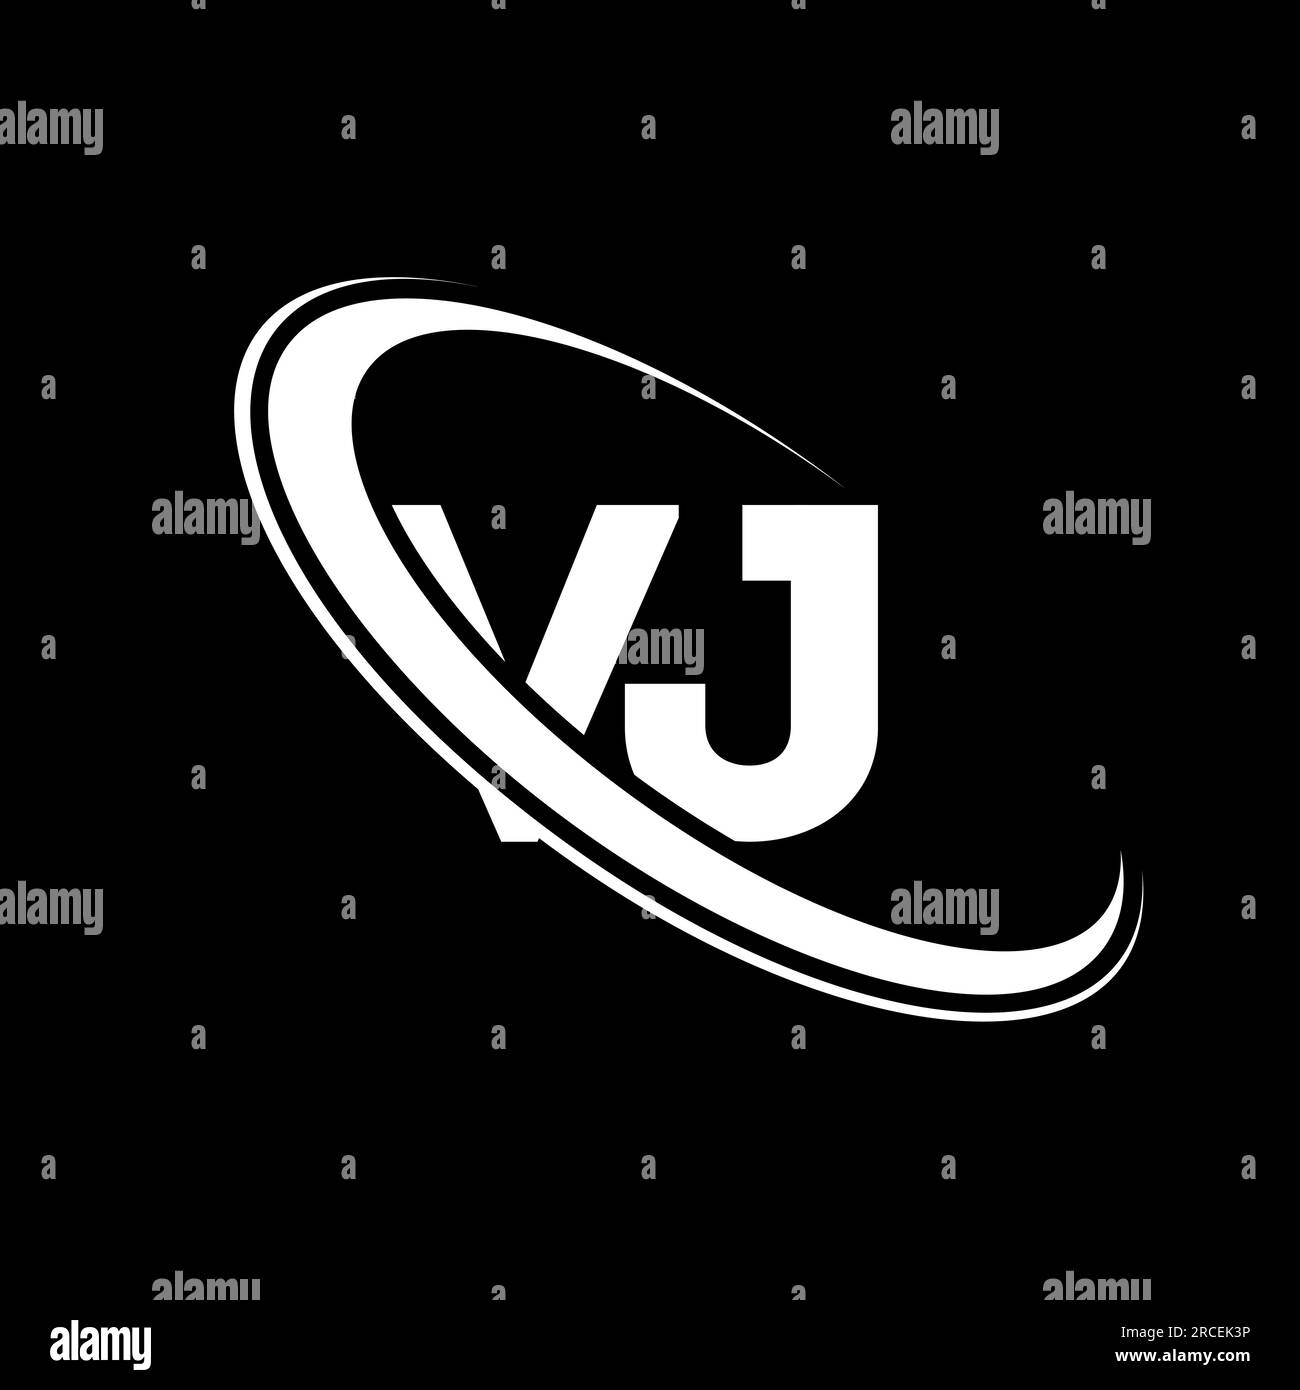 VJ logo. V J design. White VJ letter. VJ/V J letter logo design. Initial letter VJ linked circle uppercase monogram logo. Stock Vector